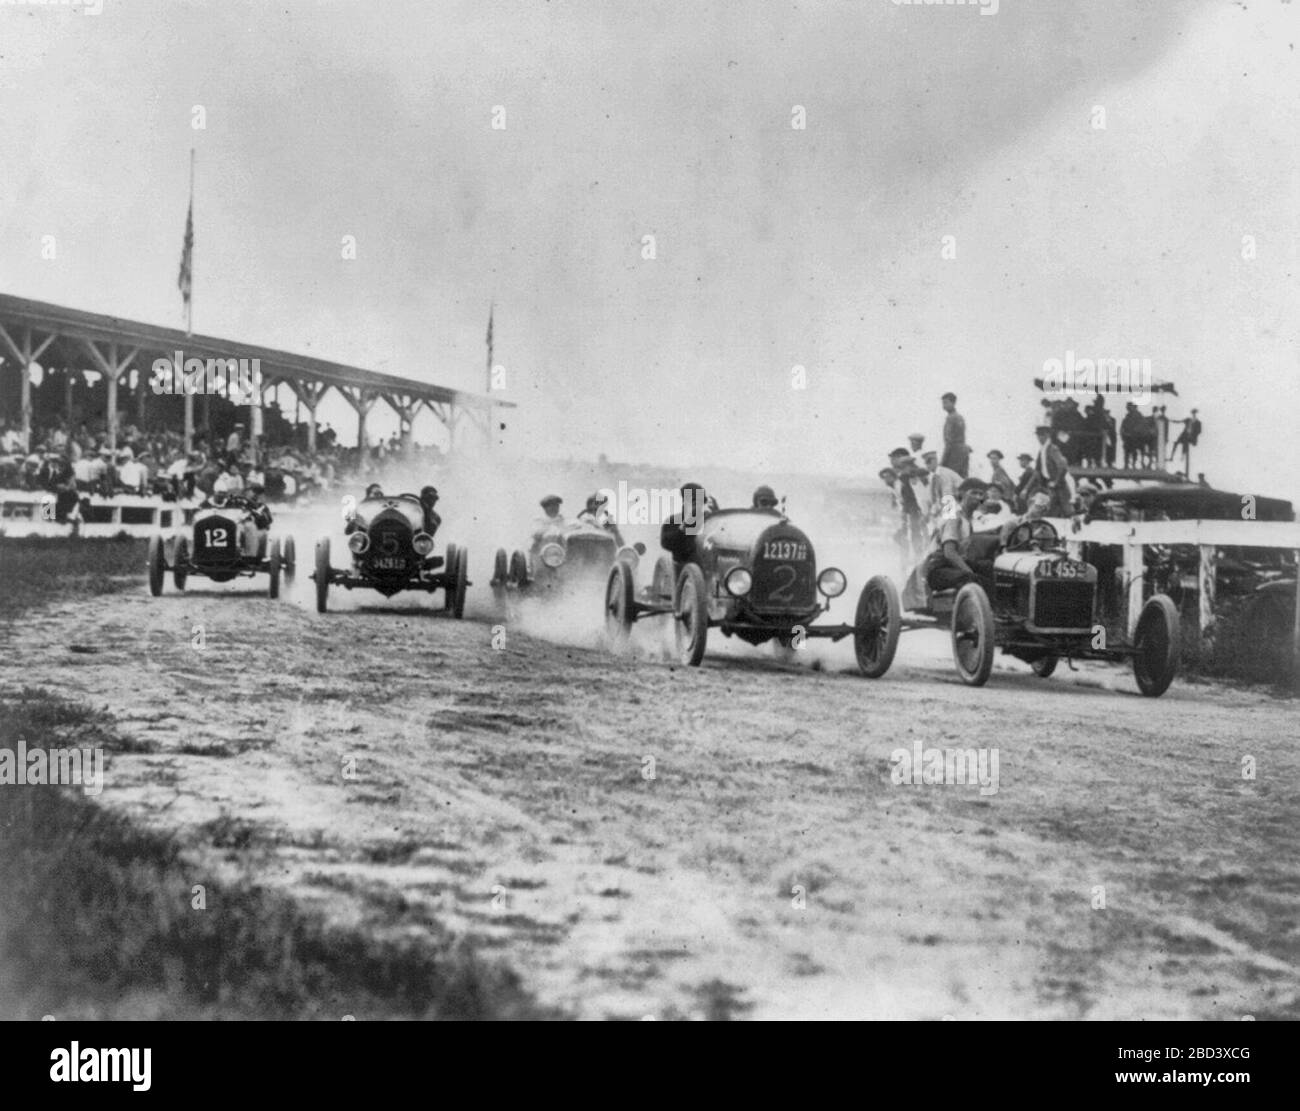 Carreras de autos en o cerca de Washington, D.C. - Vista de la curva de redondeo de autos de dos hombres, alrededor de 1922 Foto de stock